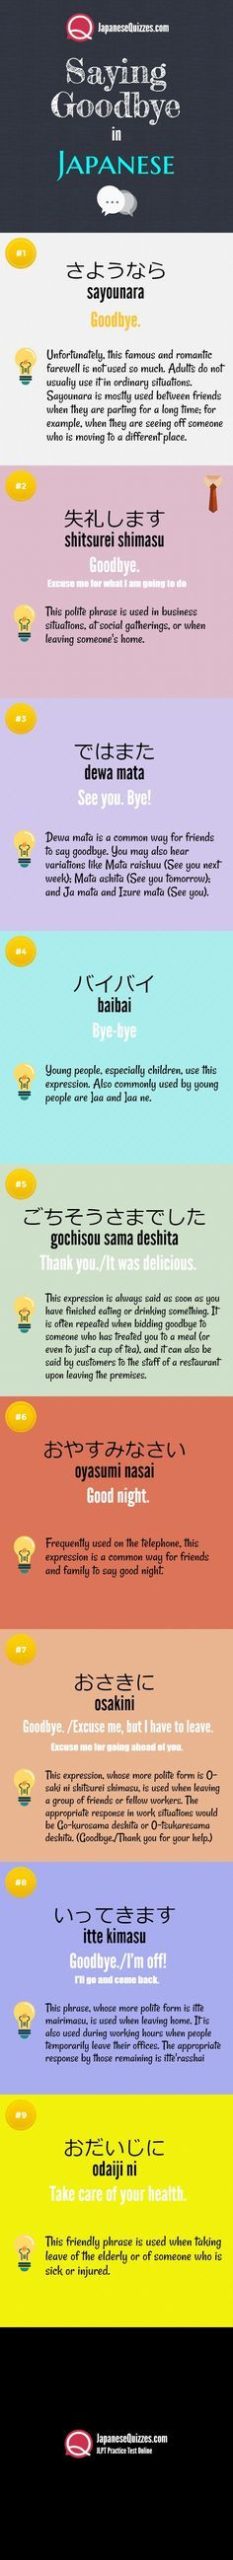 10 วิธีในการบอกลาภาษาญี่ปุ่น